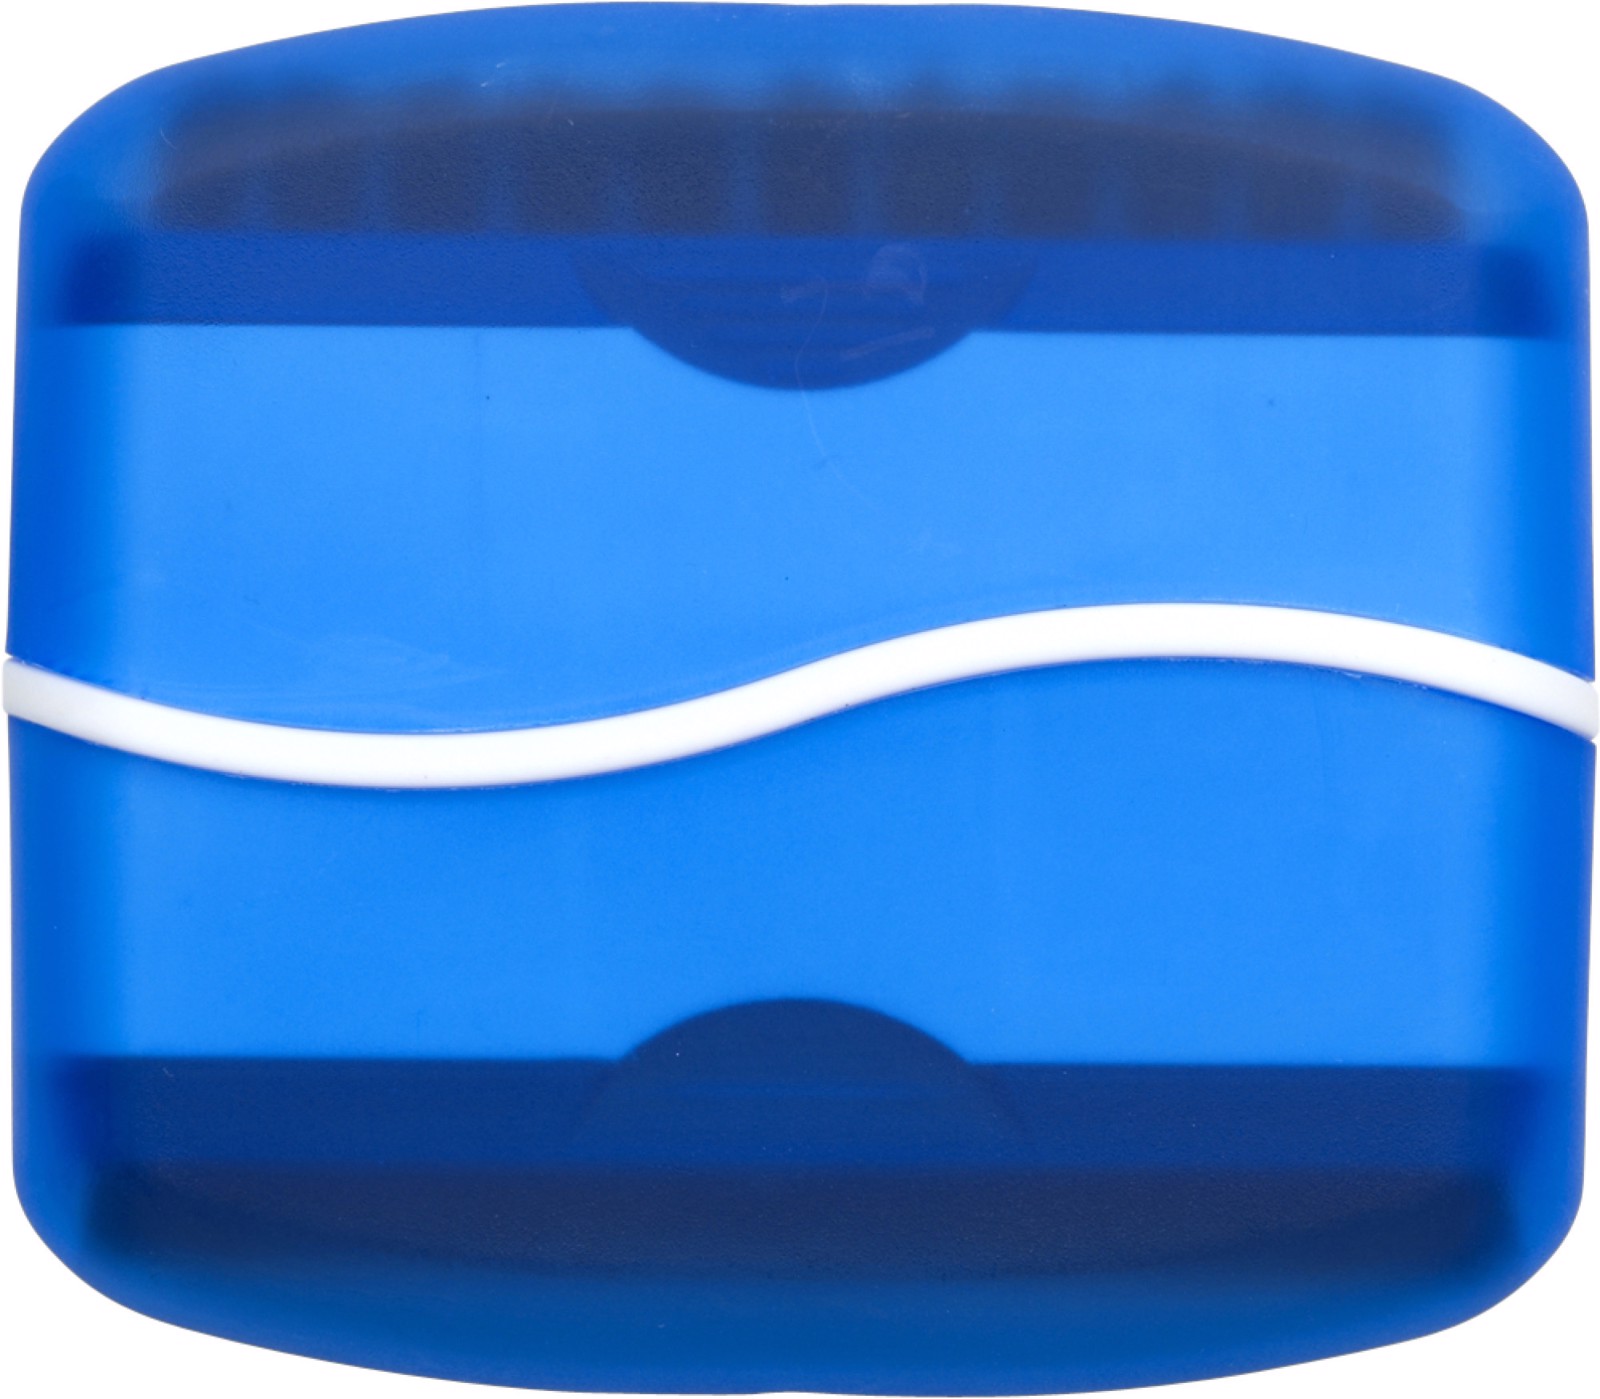 Plastic screen cleaner - Light Blue